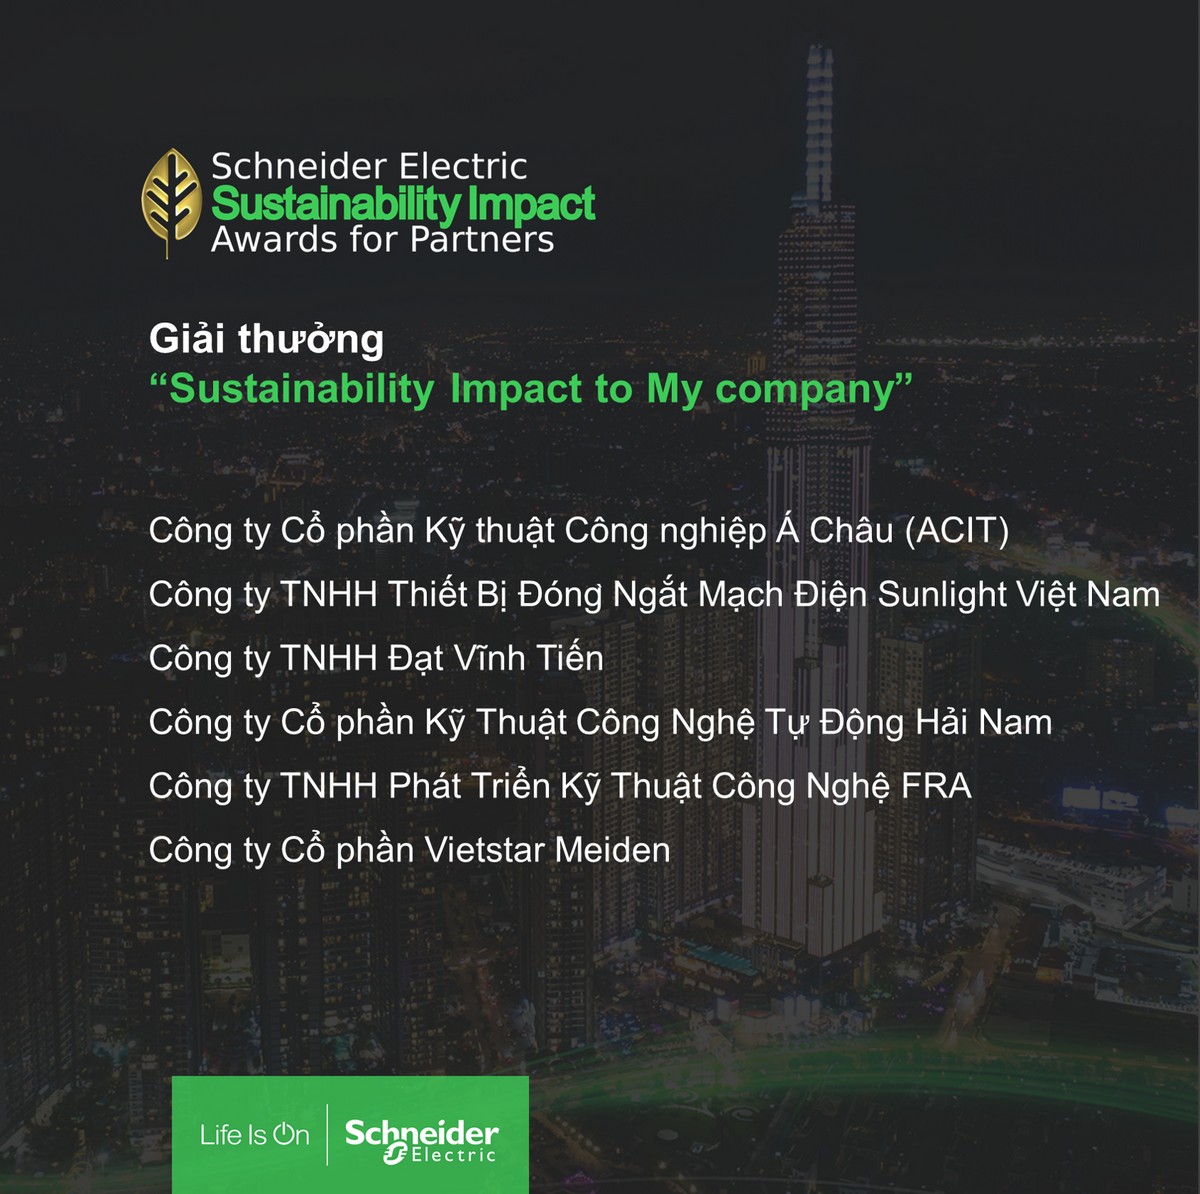 Schneider Electric vinh danh đối tác tại giải thưởng Phát triển bền vững Sustainability Impact Awards